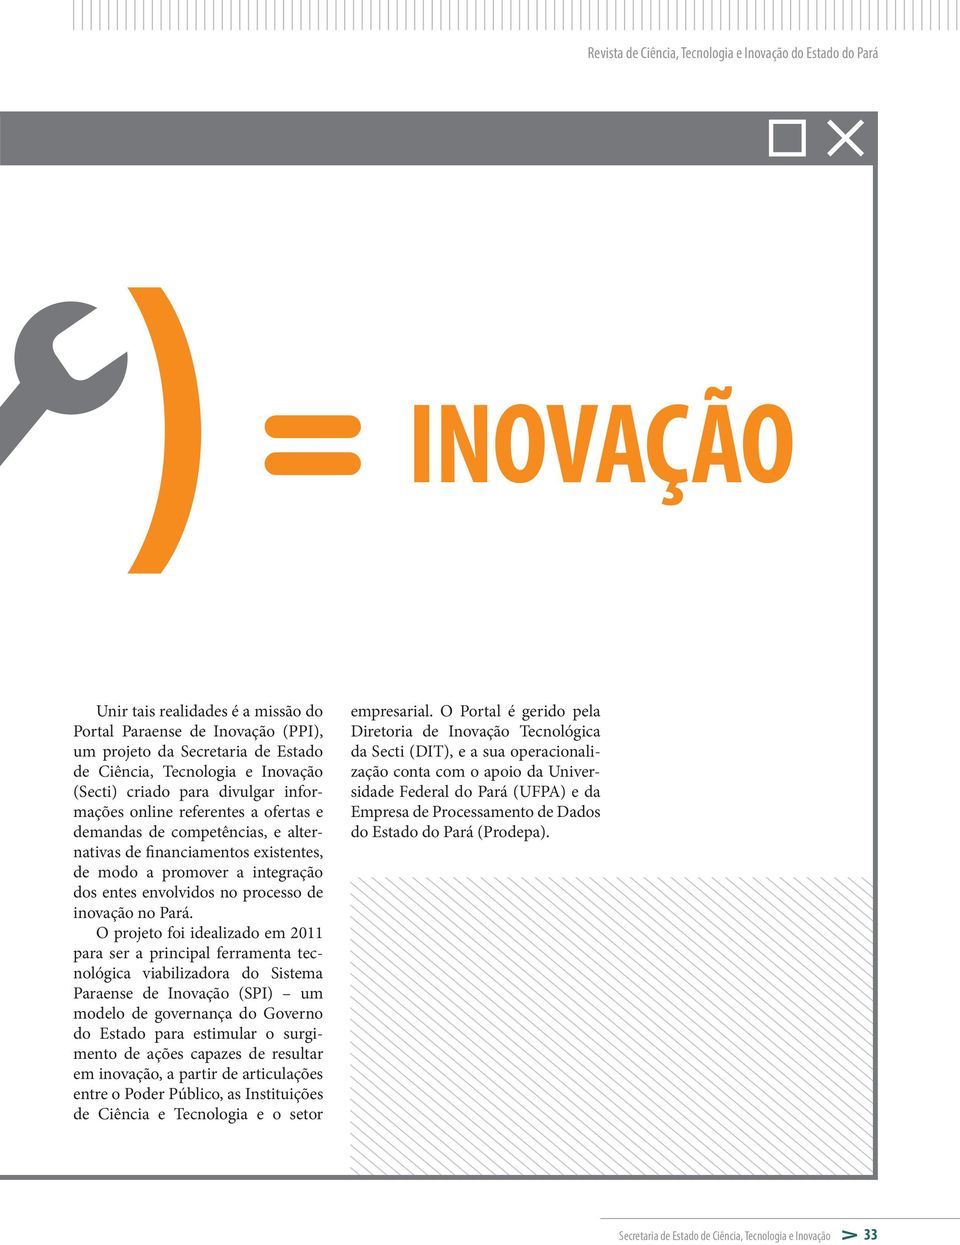 envolvidos no processo de inovação no Pará.